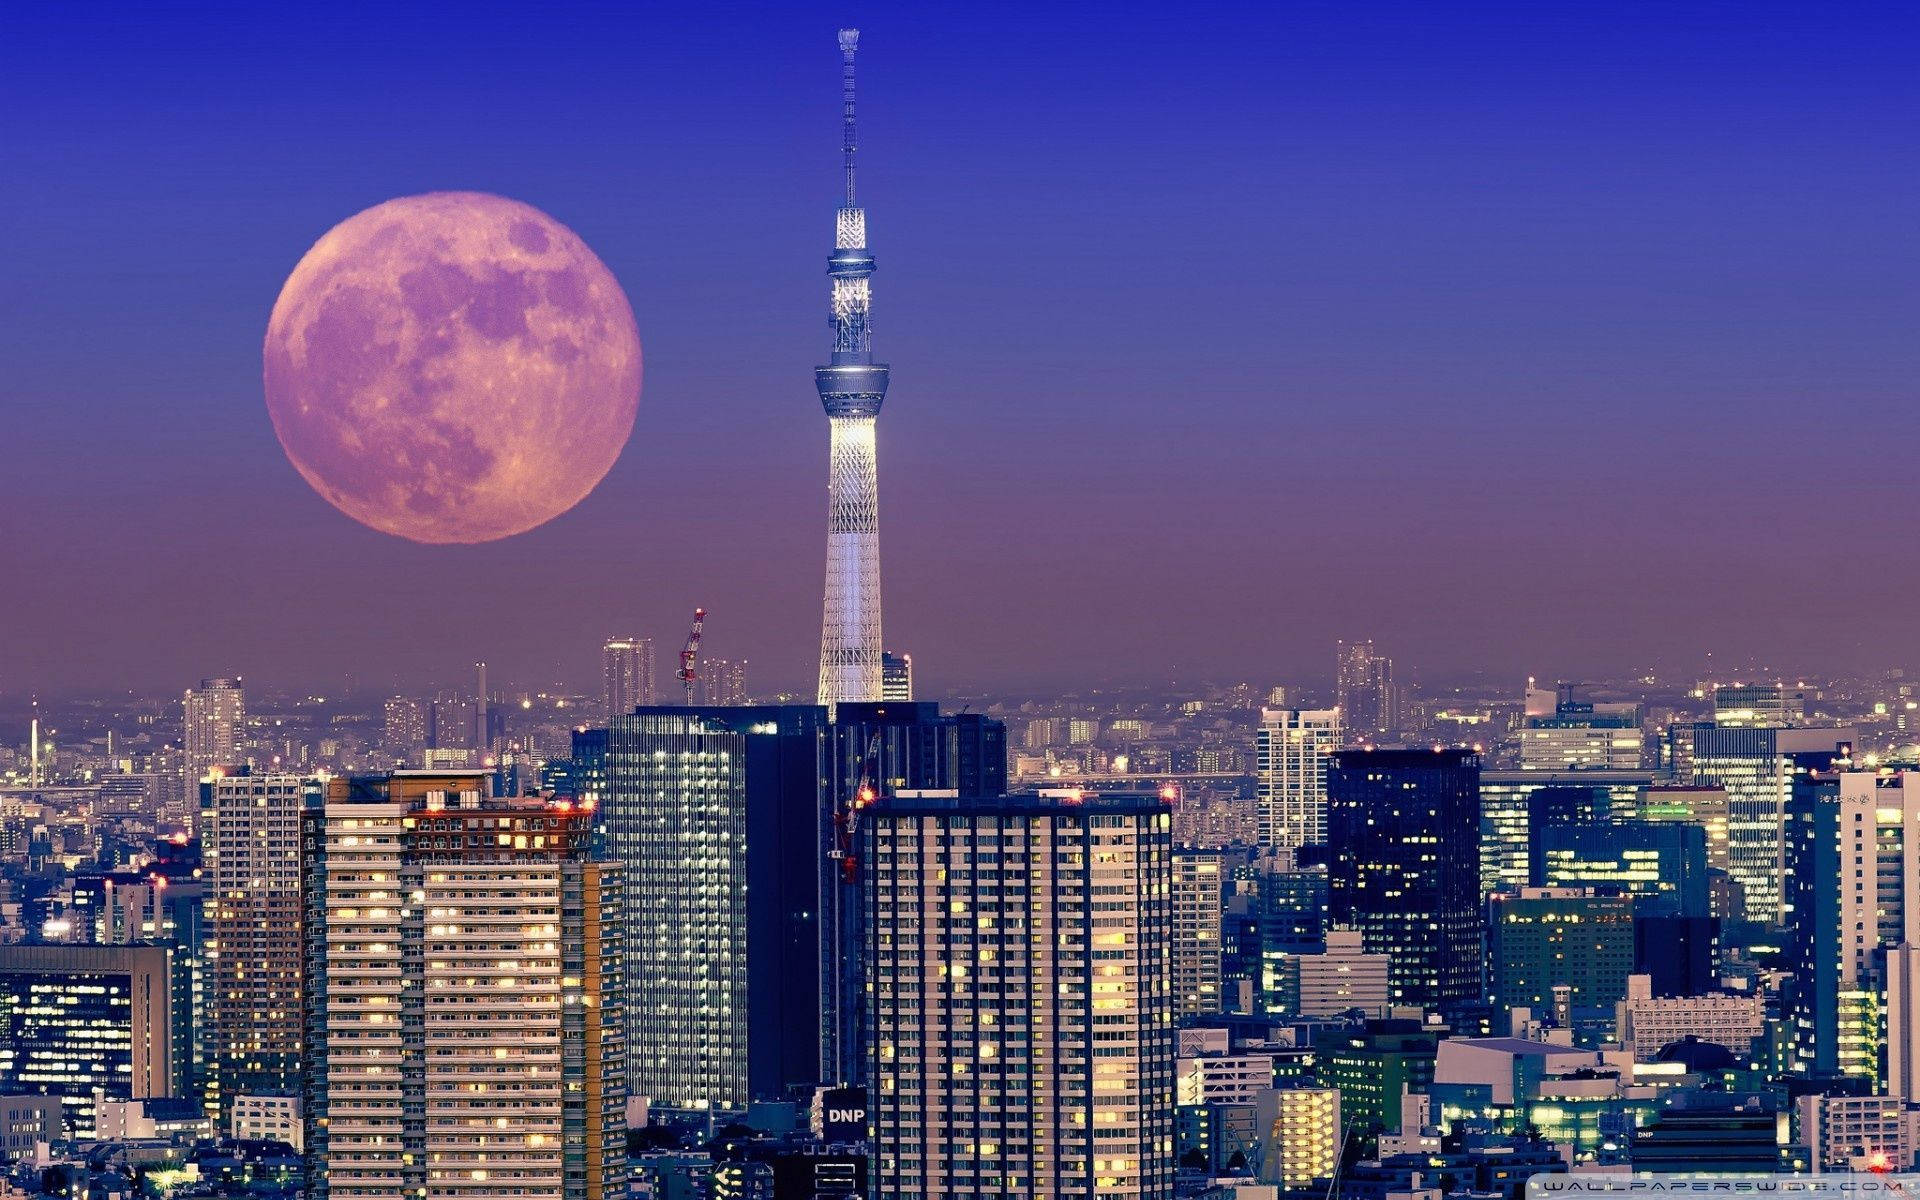 Full Moon Lights Up Tokyo City Sky Wallpaper